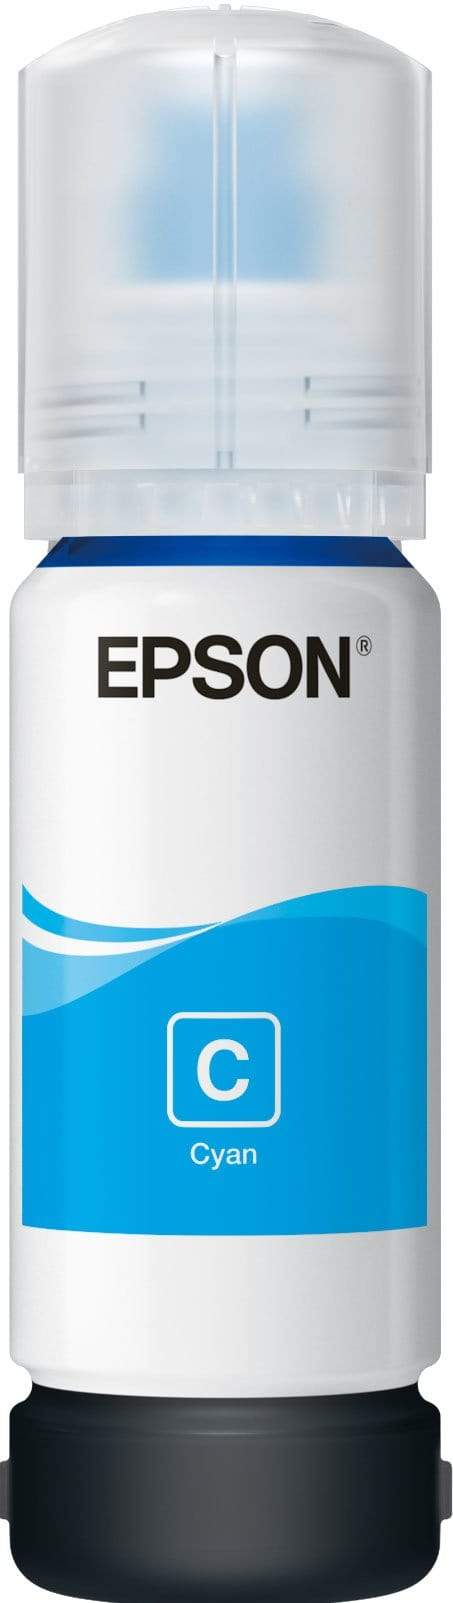 Epson 106 EcoTank Cyan Printer Ink Cartridge Original C13T00R240 Single-pack